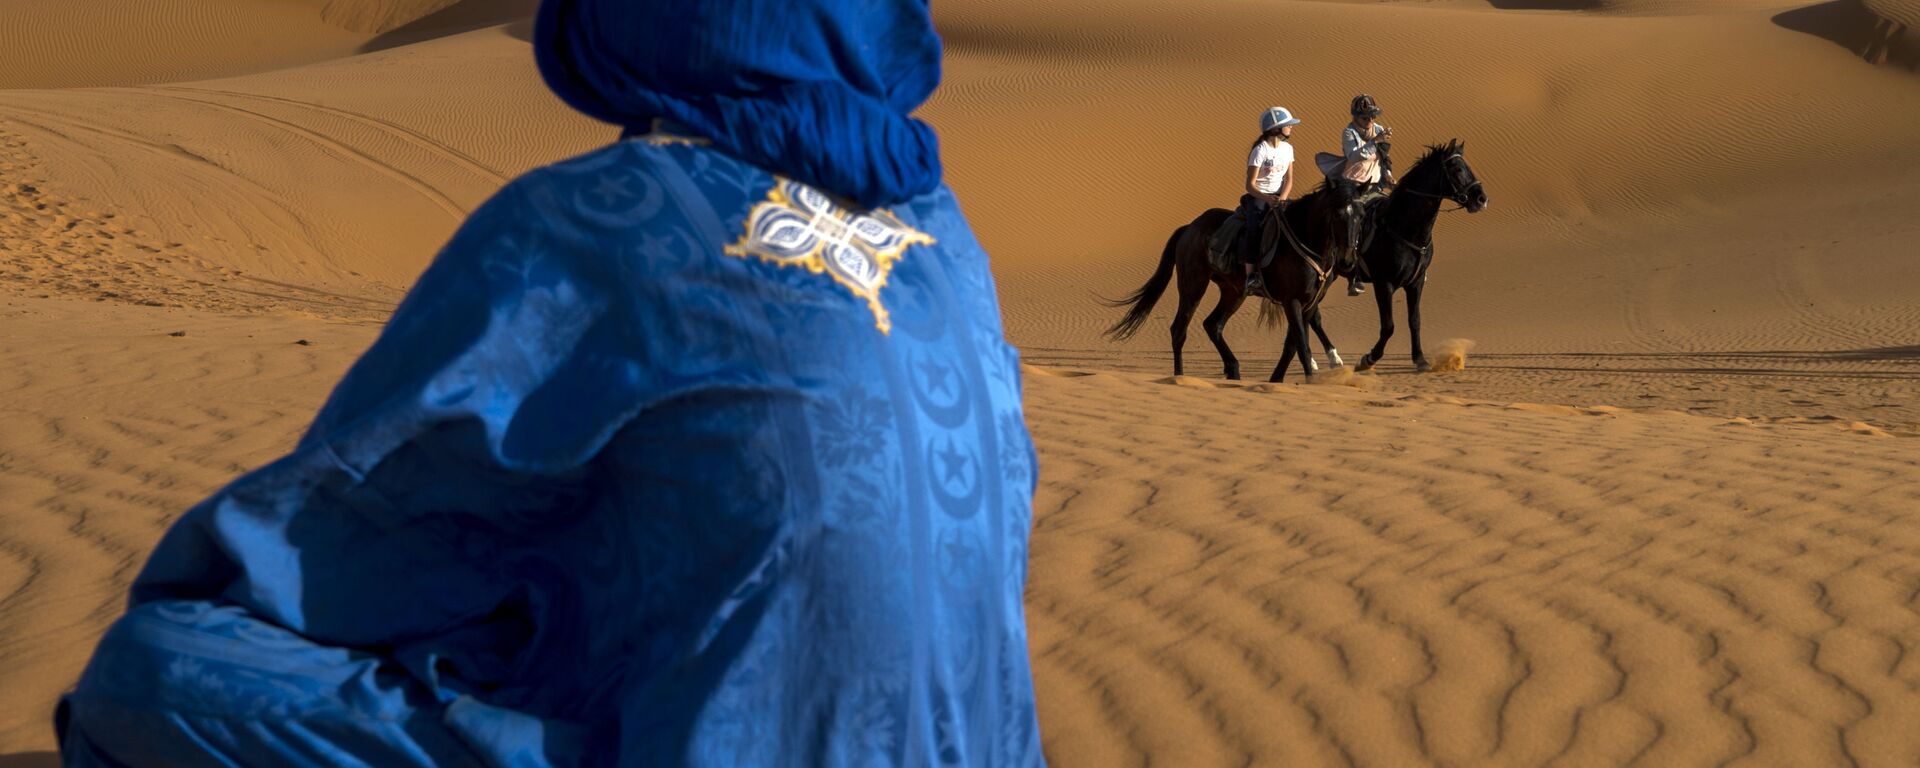 المشاركون في سباق الفروسية Gallops of Morocco في صحراء مرزوقة في جنوب الصحراء المغربية في 2 مارس/ آذار 2018 - سبوتنيك عربي, 1920, 31.07.2021